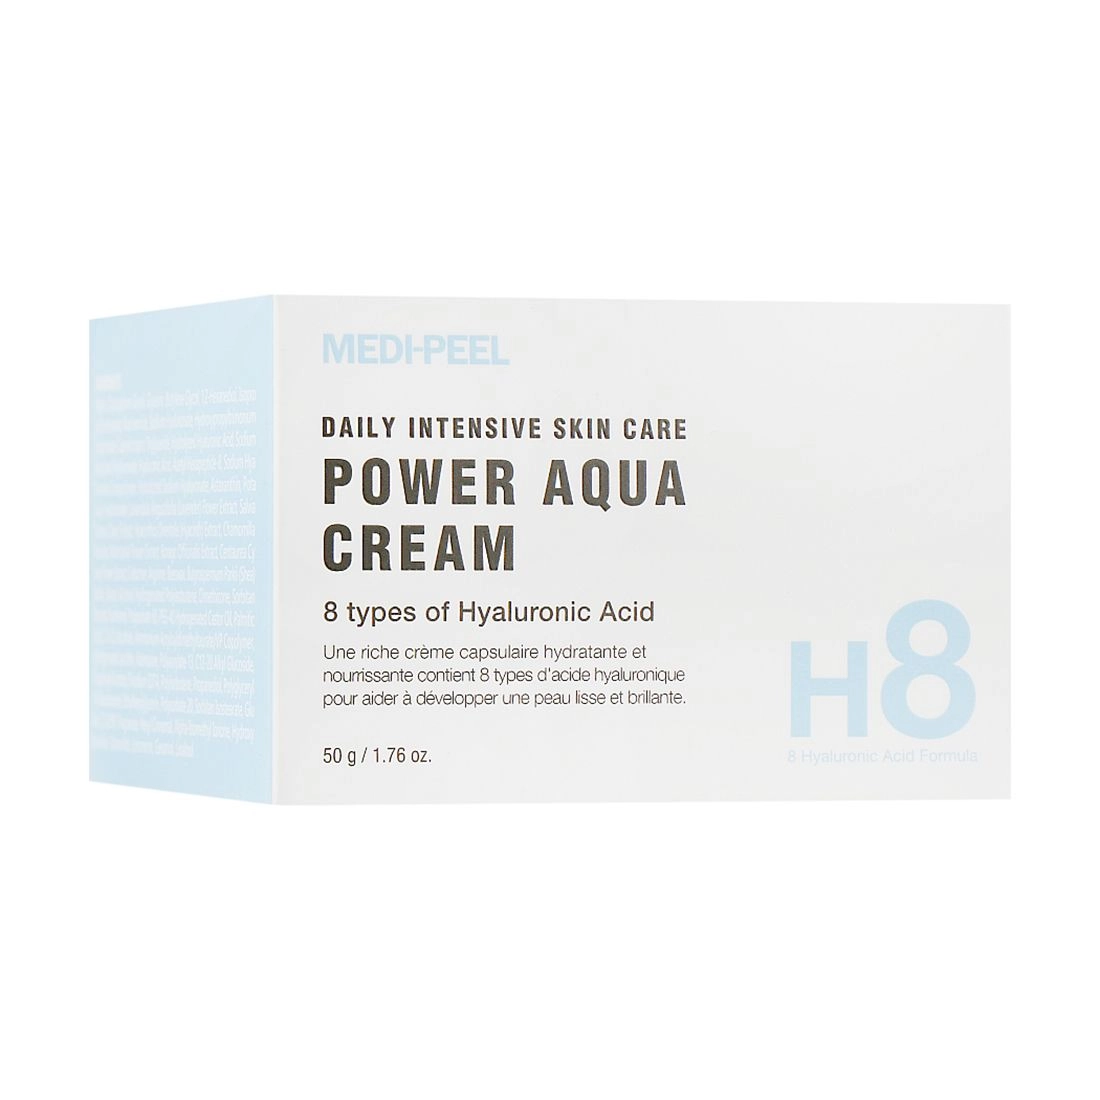 Увлажняющий крем в шариках для интенсивного увлажнения кожи - Medi peel Power Aqua Cream, 50 мл - фото N4